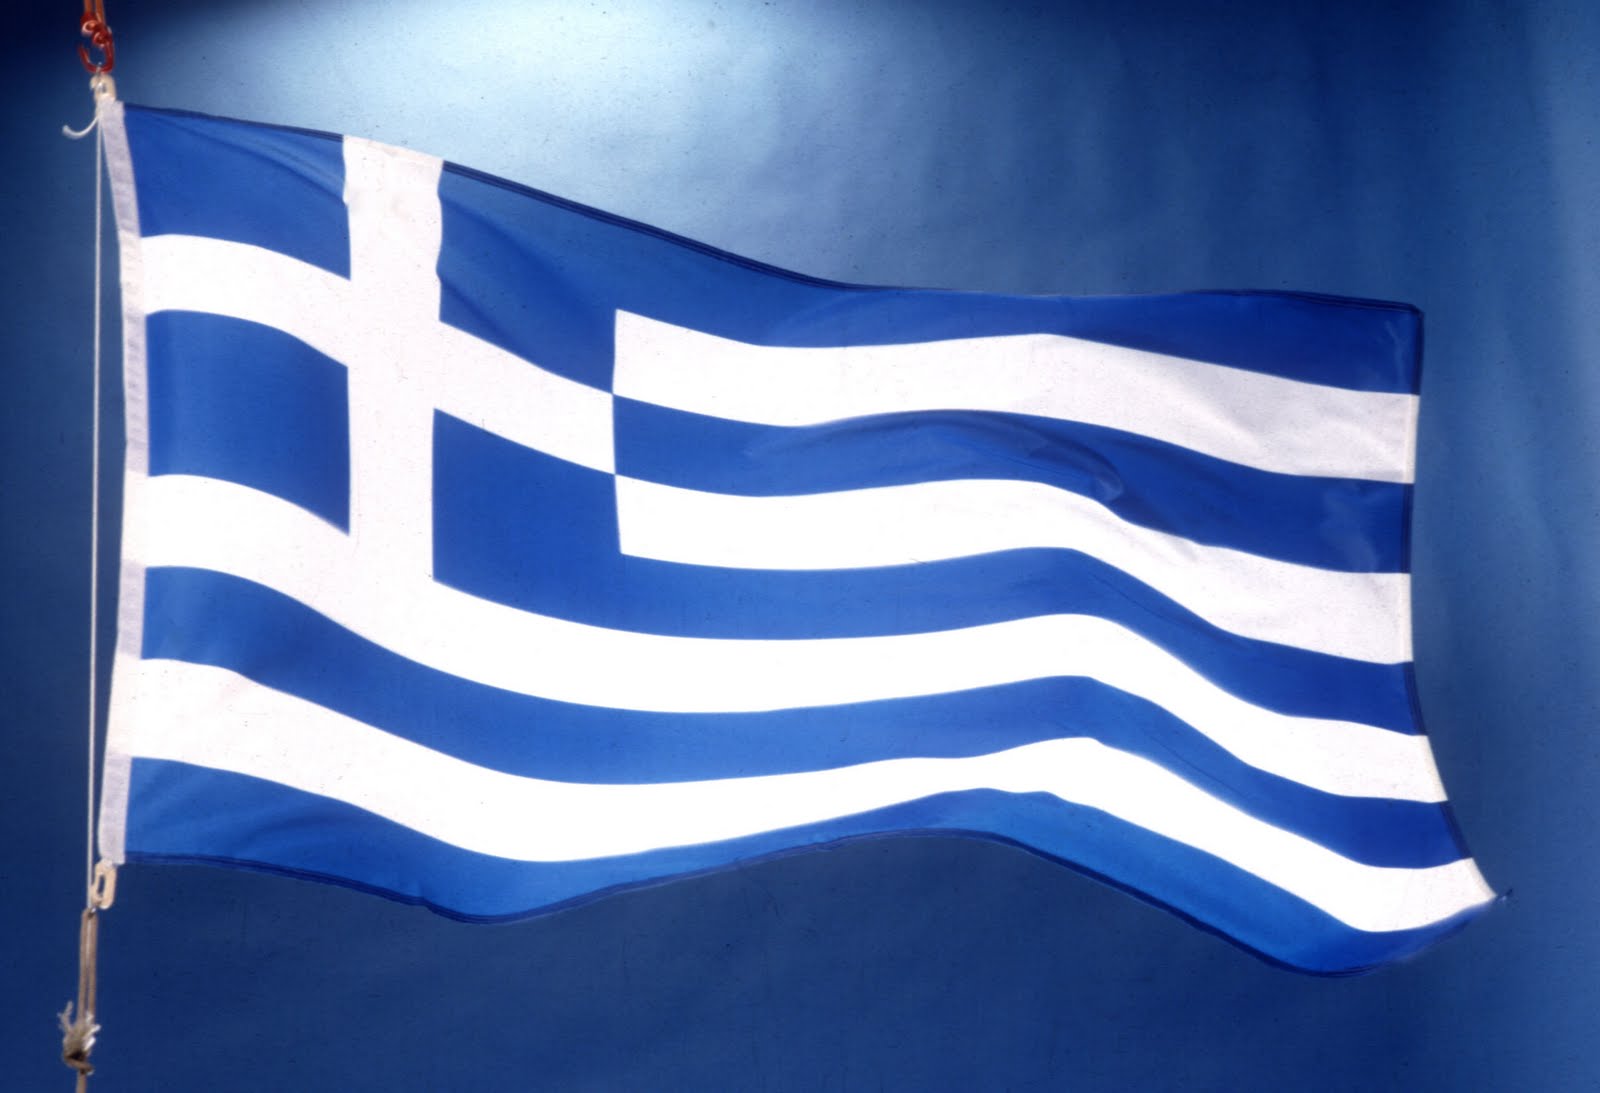 Αυτή είναι η εικόνα της Ελλάδας που κάνει το γύρο του διαδικτύου... - Φωτογραφία 1